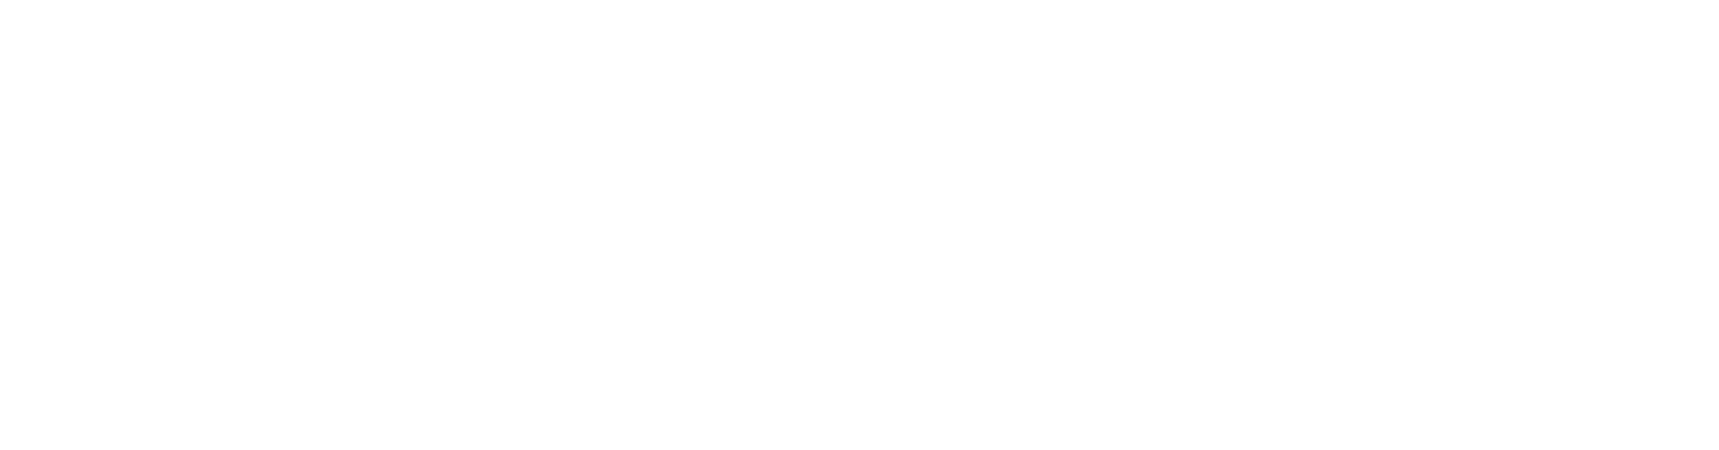 Feral Dog Studios logo